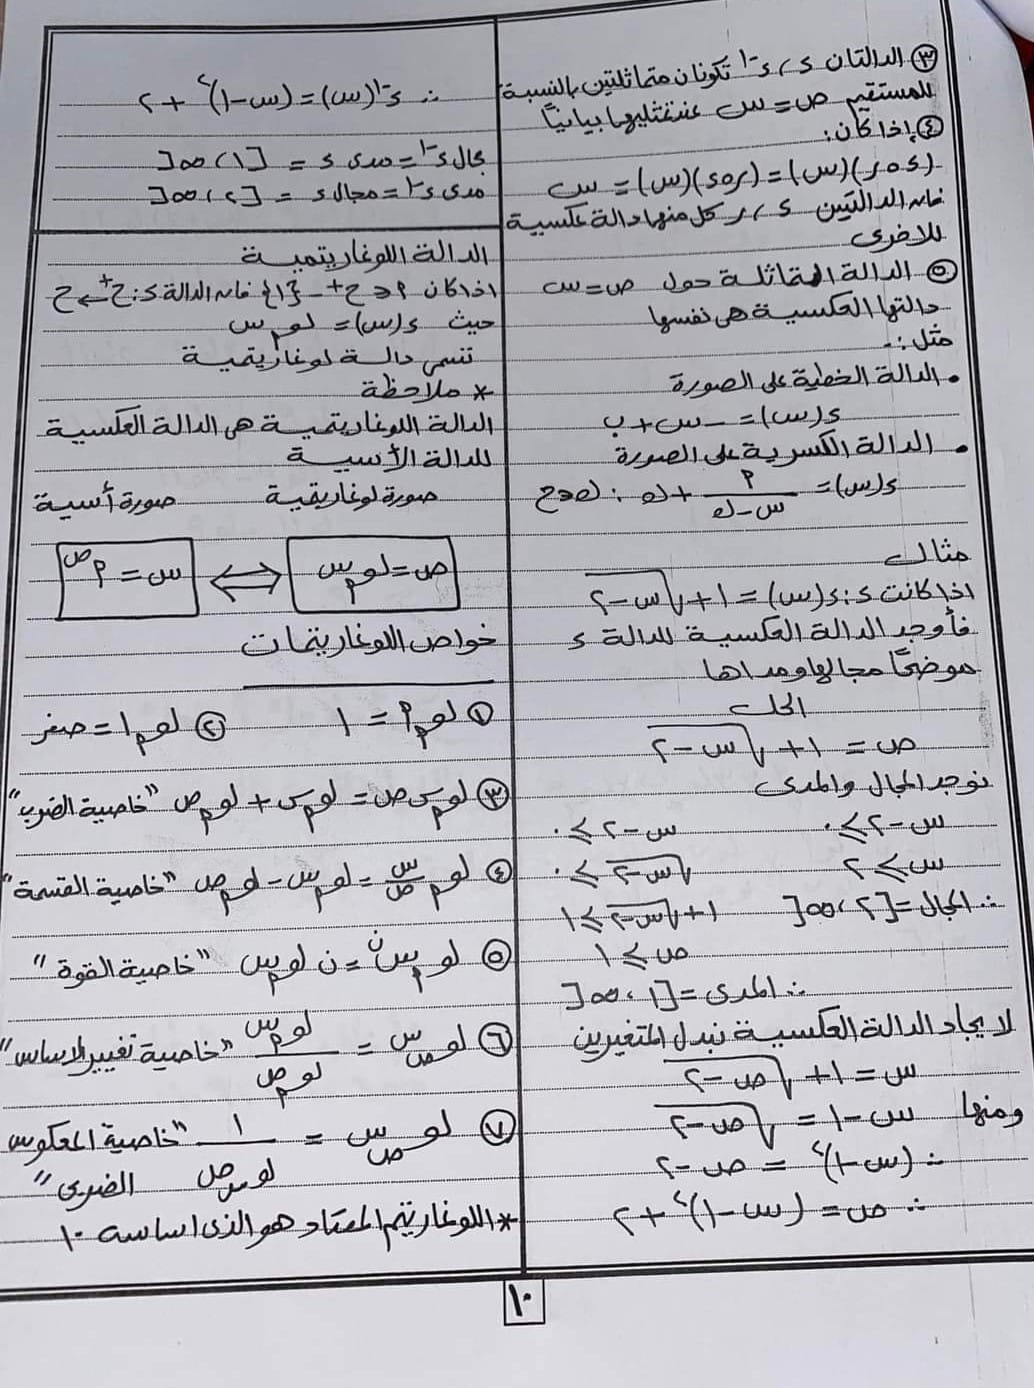 الصف الثاني الثانوي ملخص وتمارين مجابة رياضيات للأستاذ/علاء محمد الطاهر